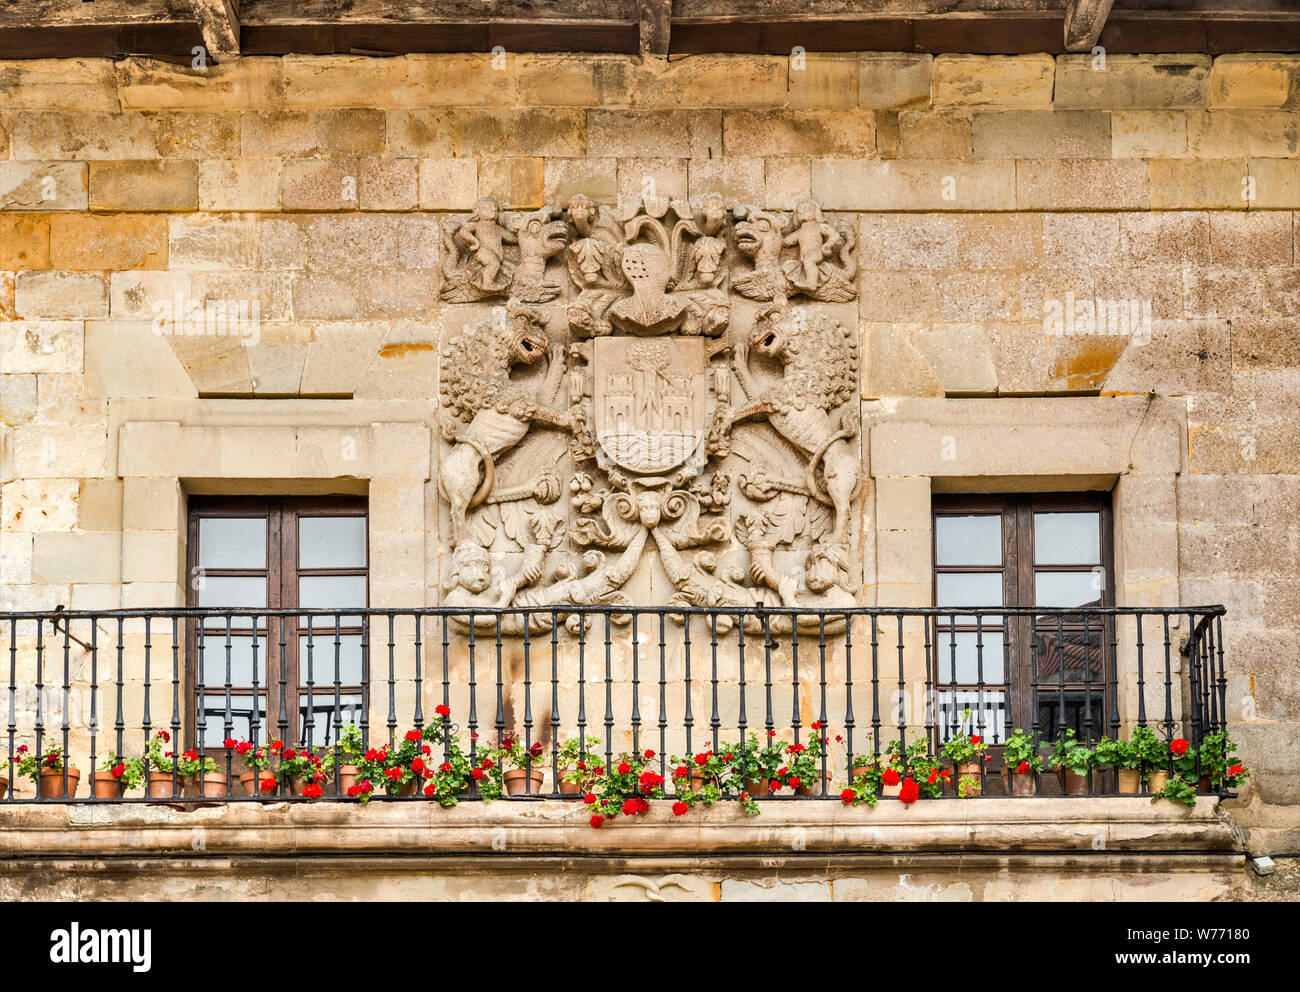 Armoiries de maison des propriétaires sculptés sur mur de la ville médiévale de Santillana del Mar, Cantabria, ESPAGNE Banque D'Images